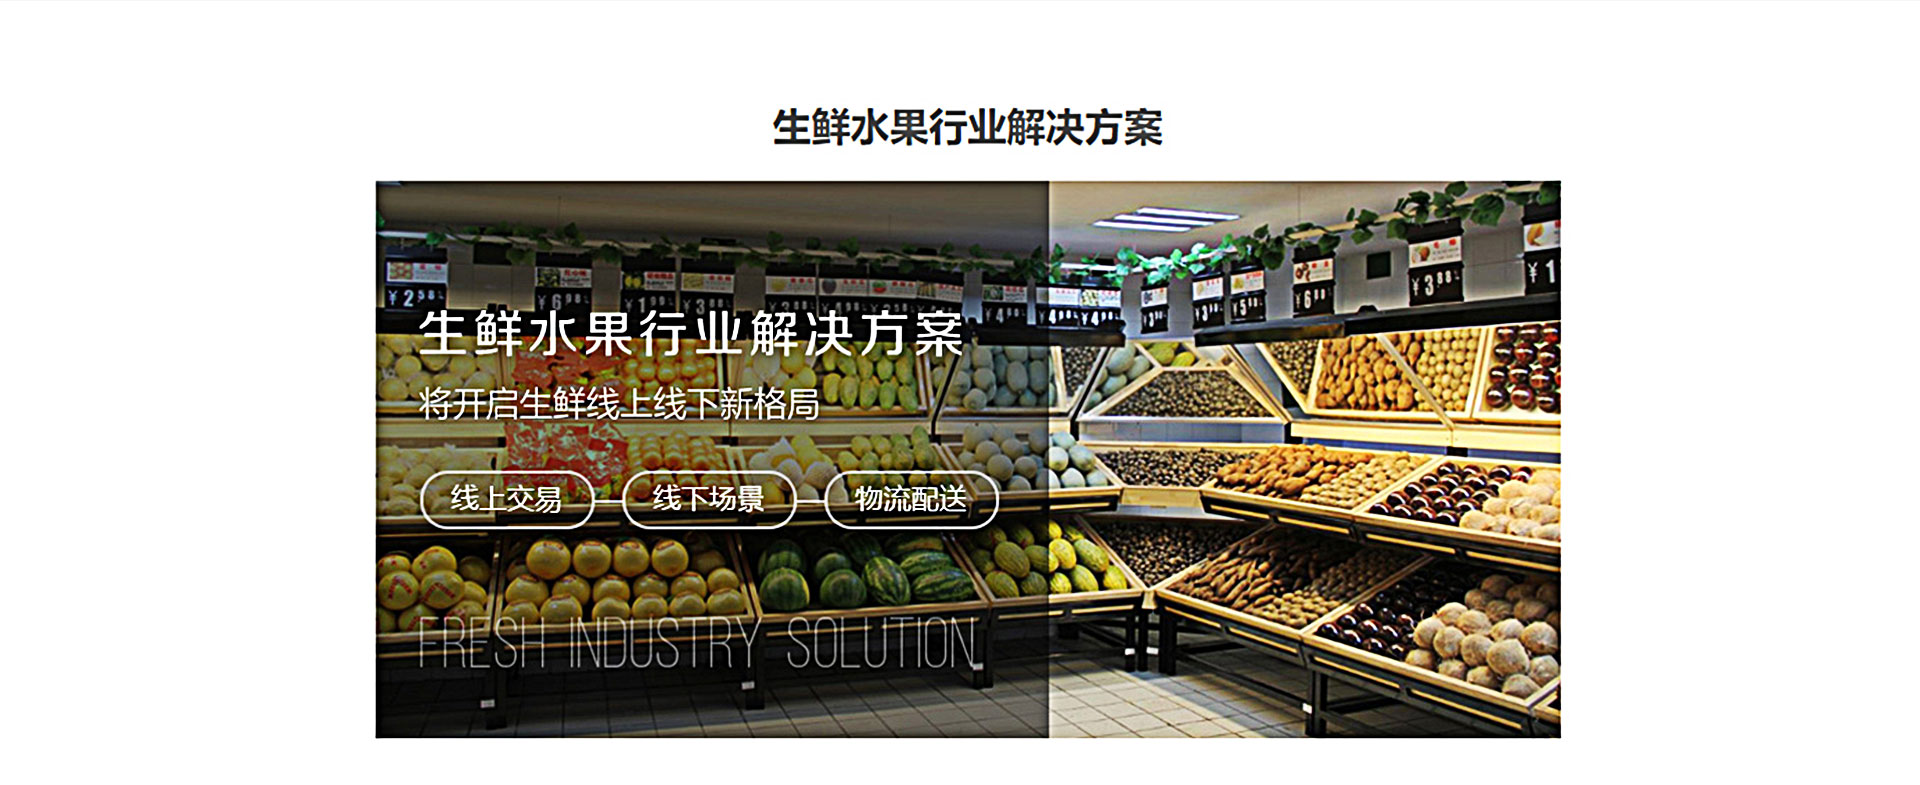 水果生鲜版小程序,上海小程序开发,微信小程序,小程序服务商,免费微信小程序